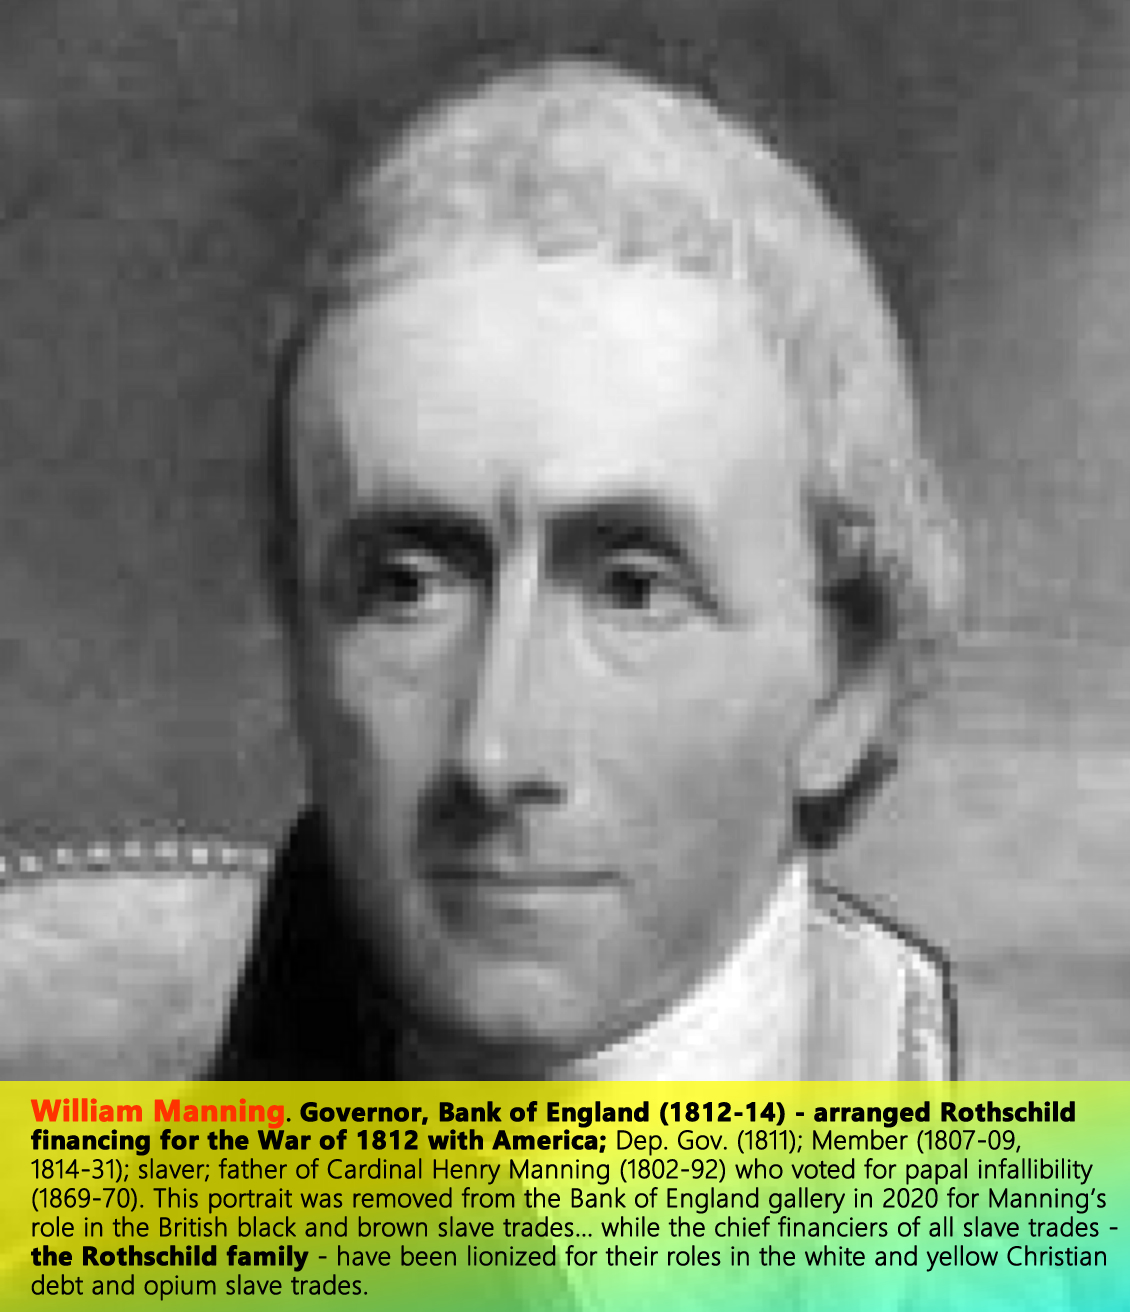 William Manning, Bank of England—Gov. (1812-13); Dep. Gov. (1811); Member (1807-09, 1814-31); Slaver; father of Cardinal Manning (1808-92).